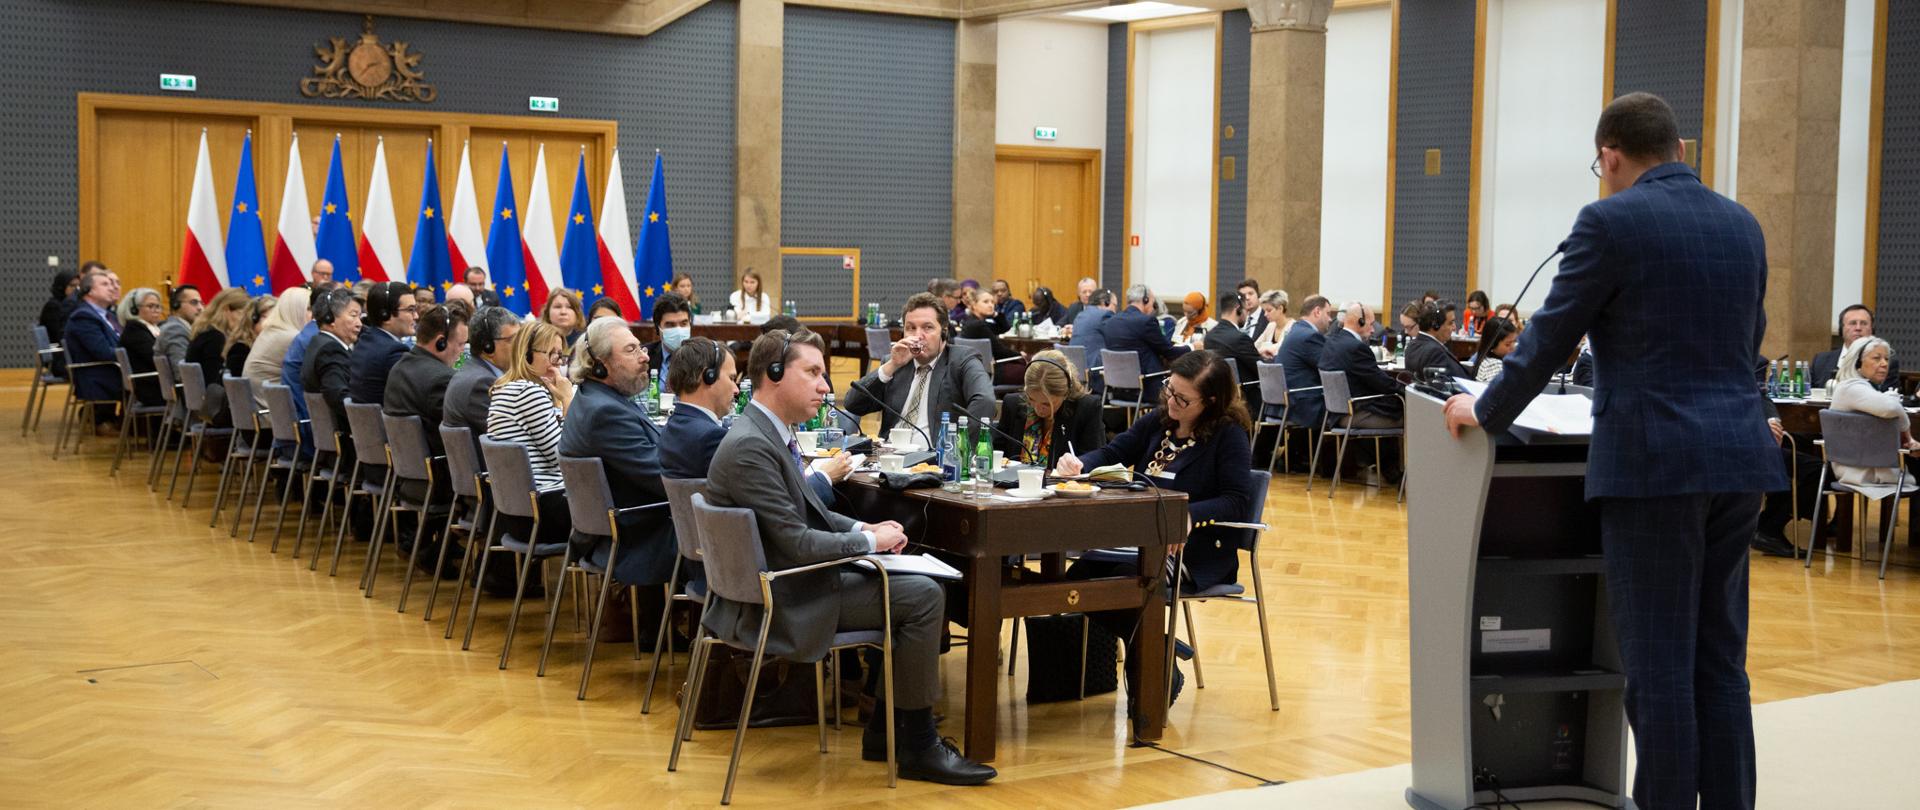 Duża sala z flagami Polski i Unii Europejskiej. Długie, ustawione równolegle dwa stoły wraz z ludźmi w słuchawkach na uszach.